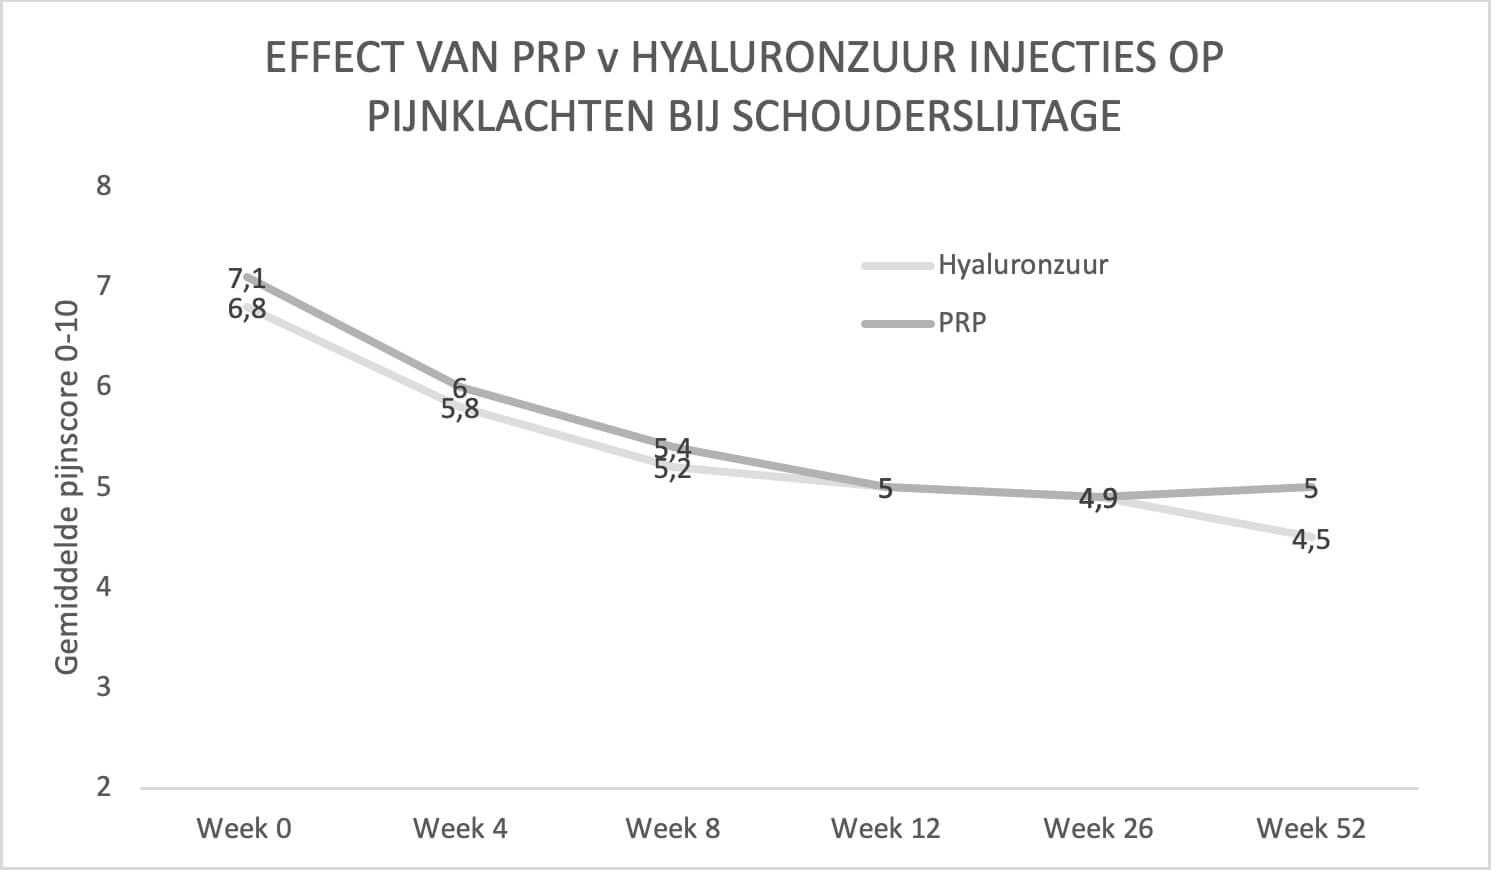 Effect van PRP v hyaluronzuur injecties op pijnklachten bij schouderslijtage